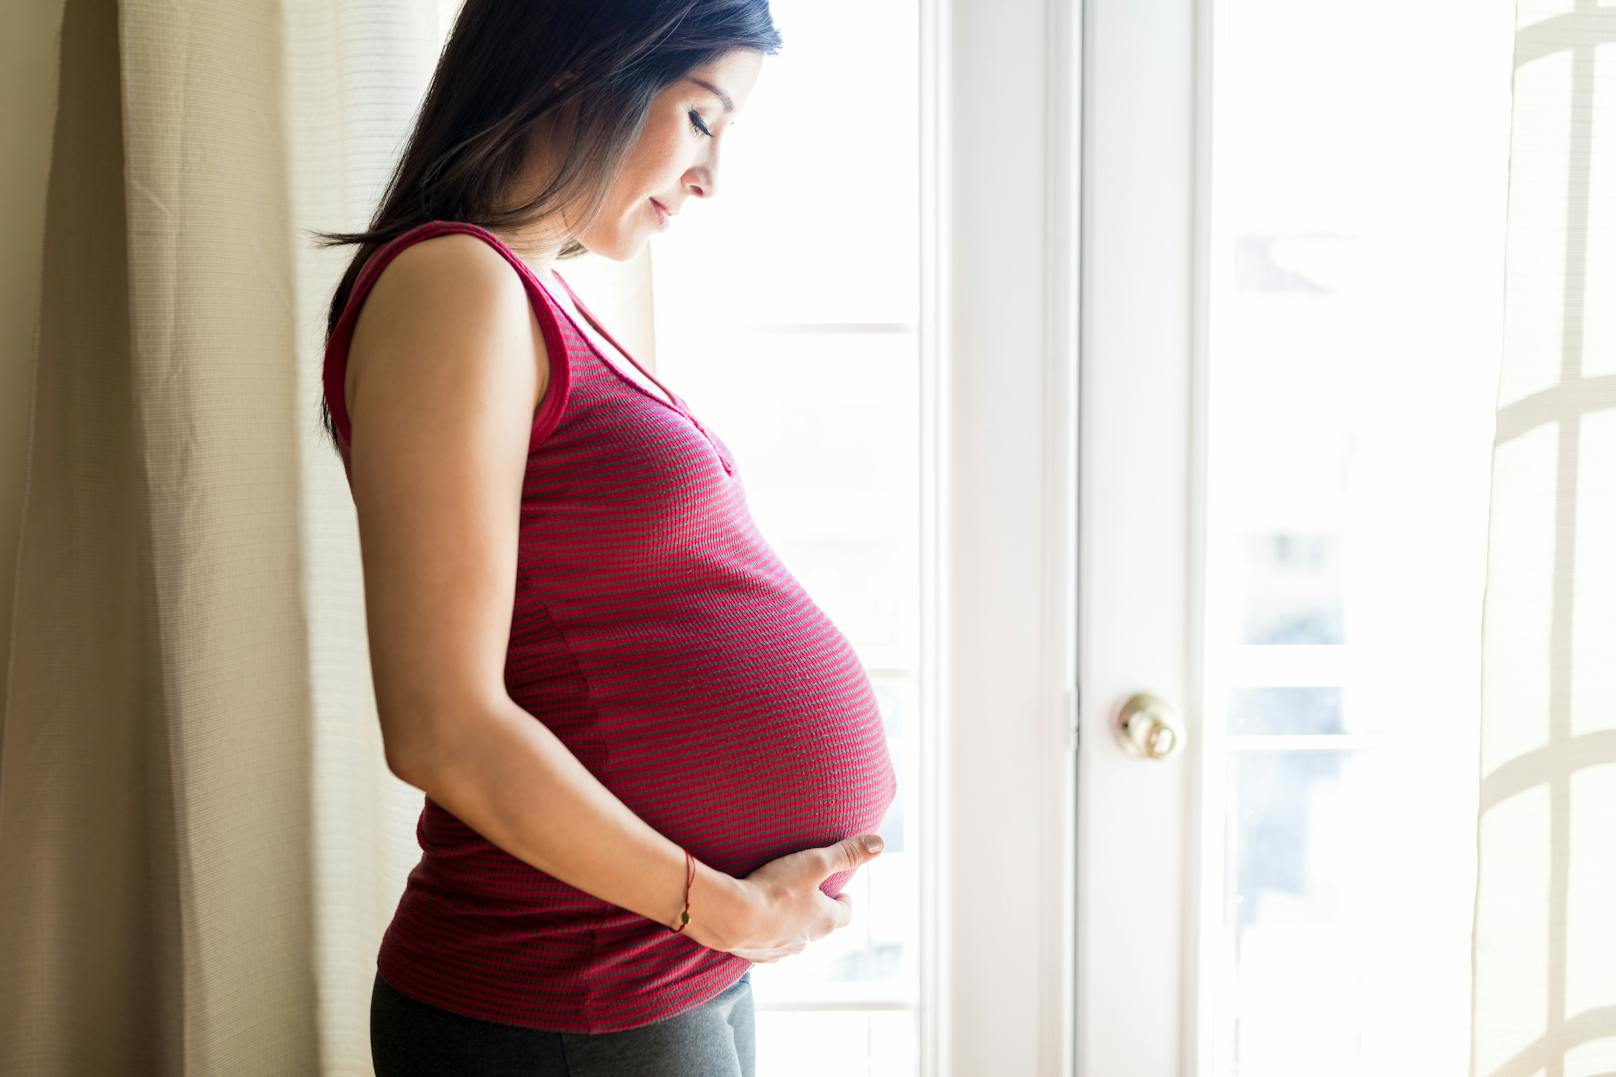 Schwangere müssen in der Corona-Pandemie verstärkt geschützt werden.